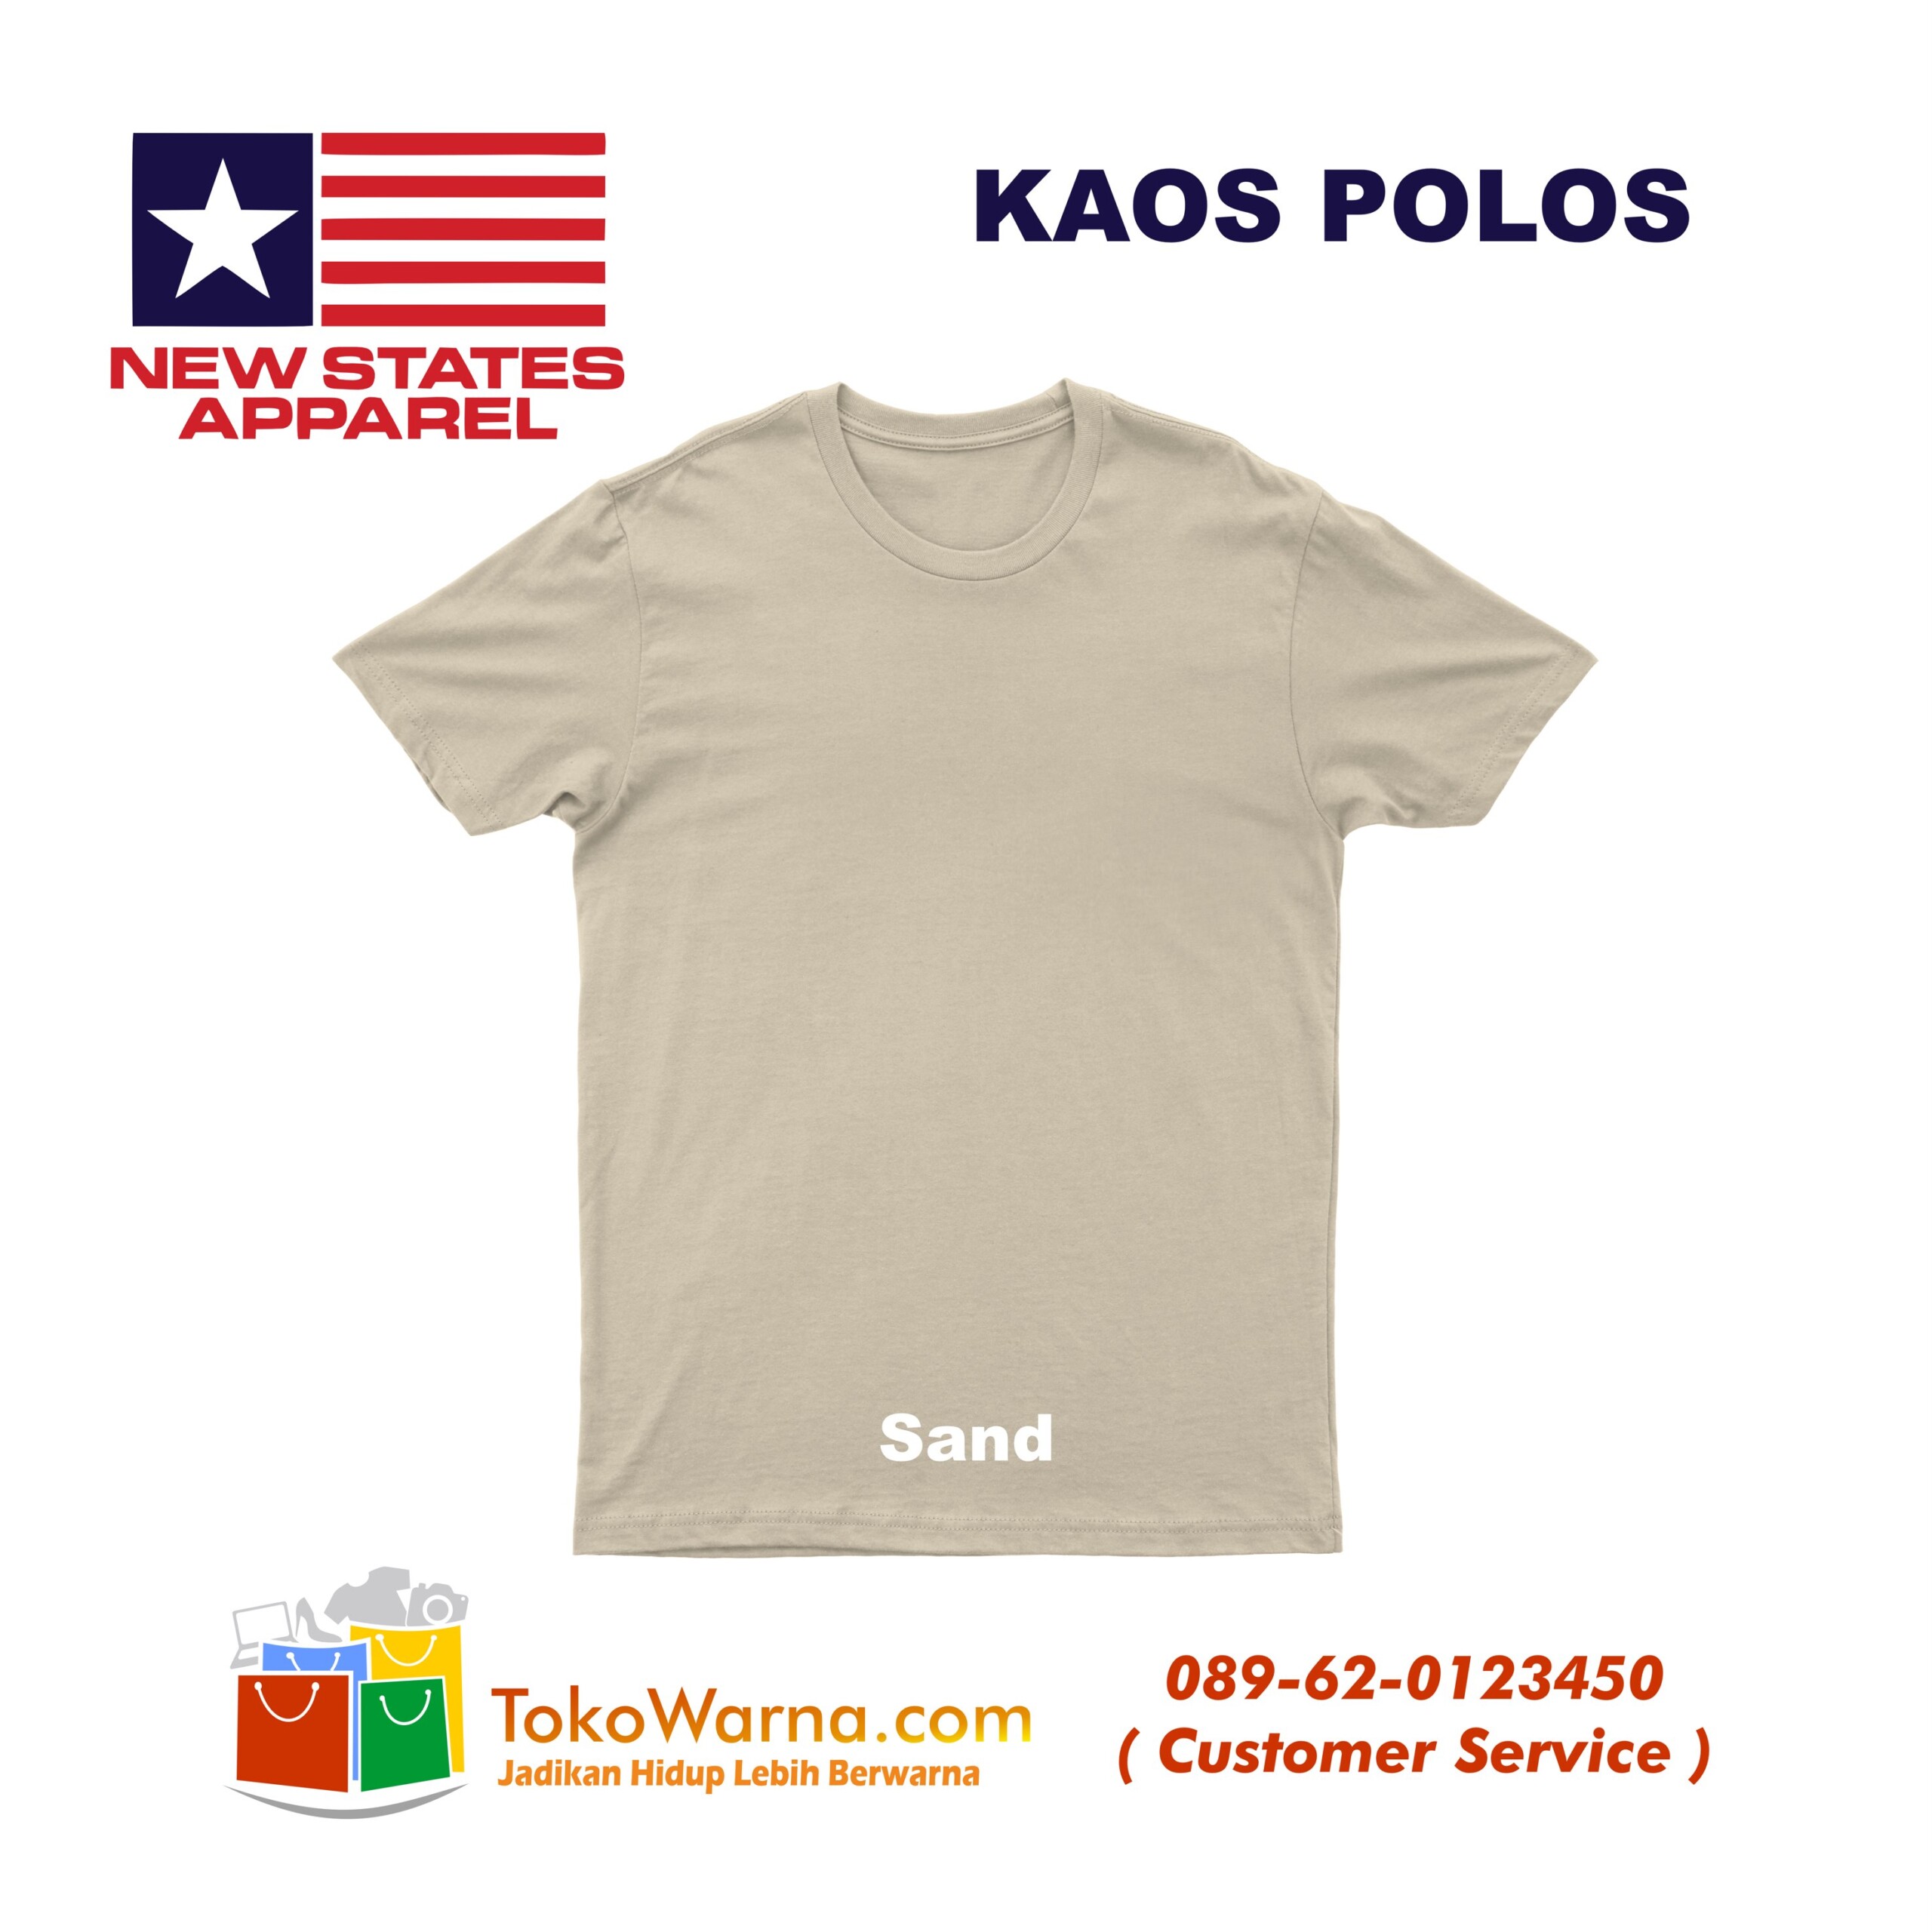 (NSA) New States Apparel Soft Tee 30s Kaos Polos Sand